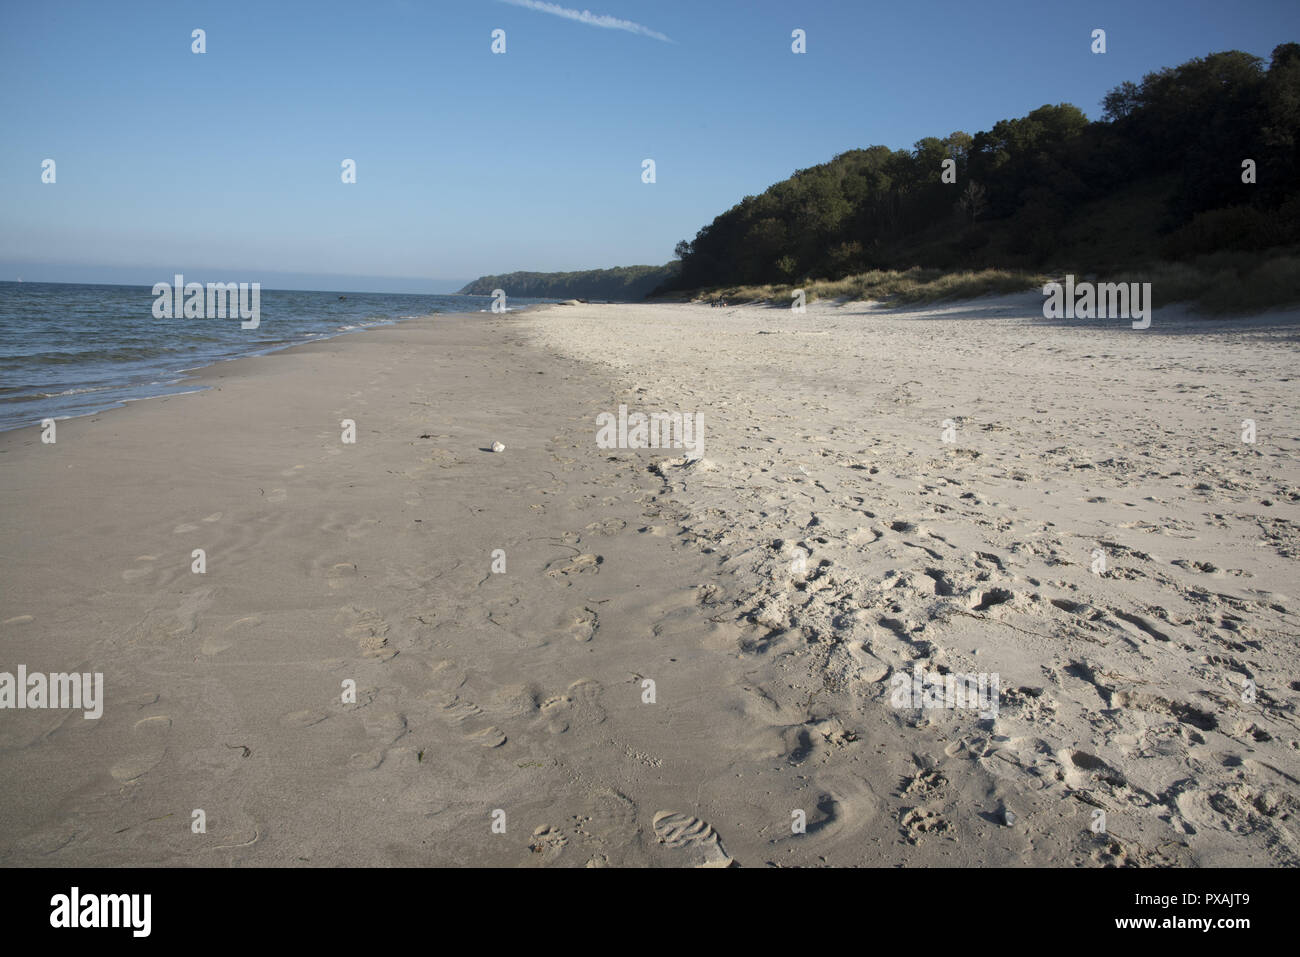 Un sable appelé Nordstrand en face d'une côte escarpée mène de l'ouest à l'Gellort appelé extrême nord de l'île de Rügen en Allemagne. Banque D'Images